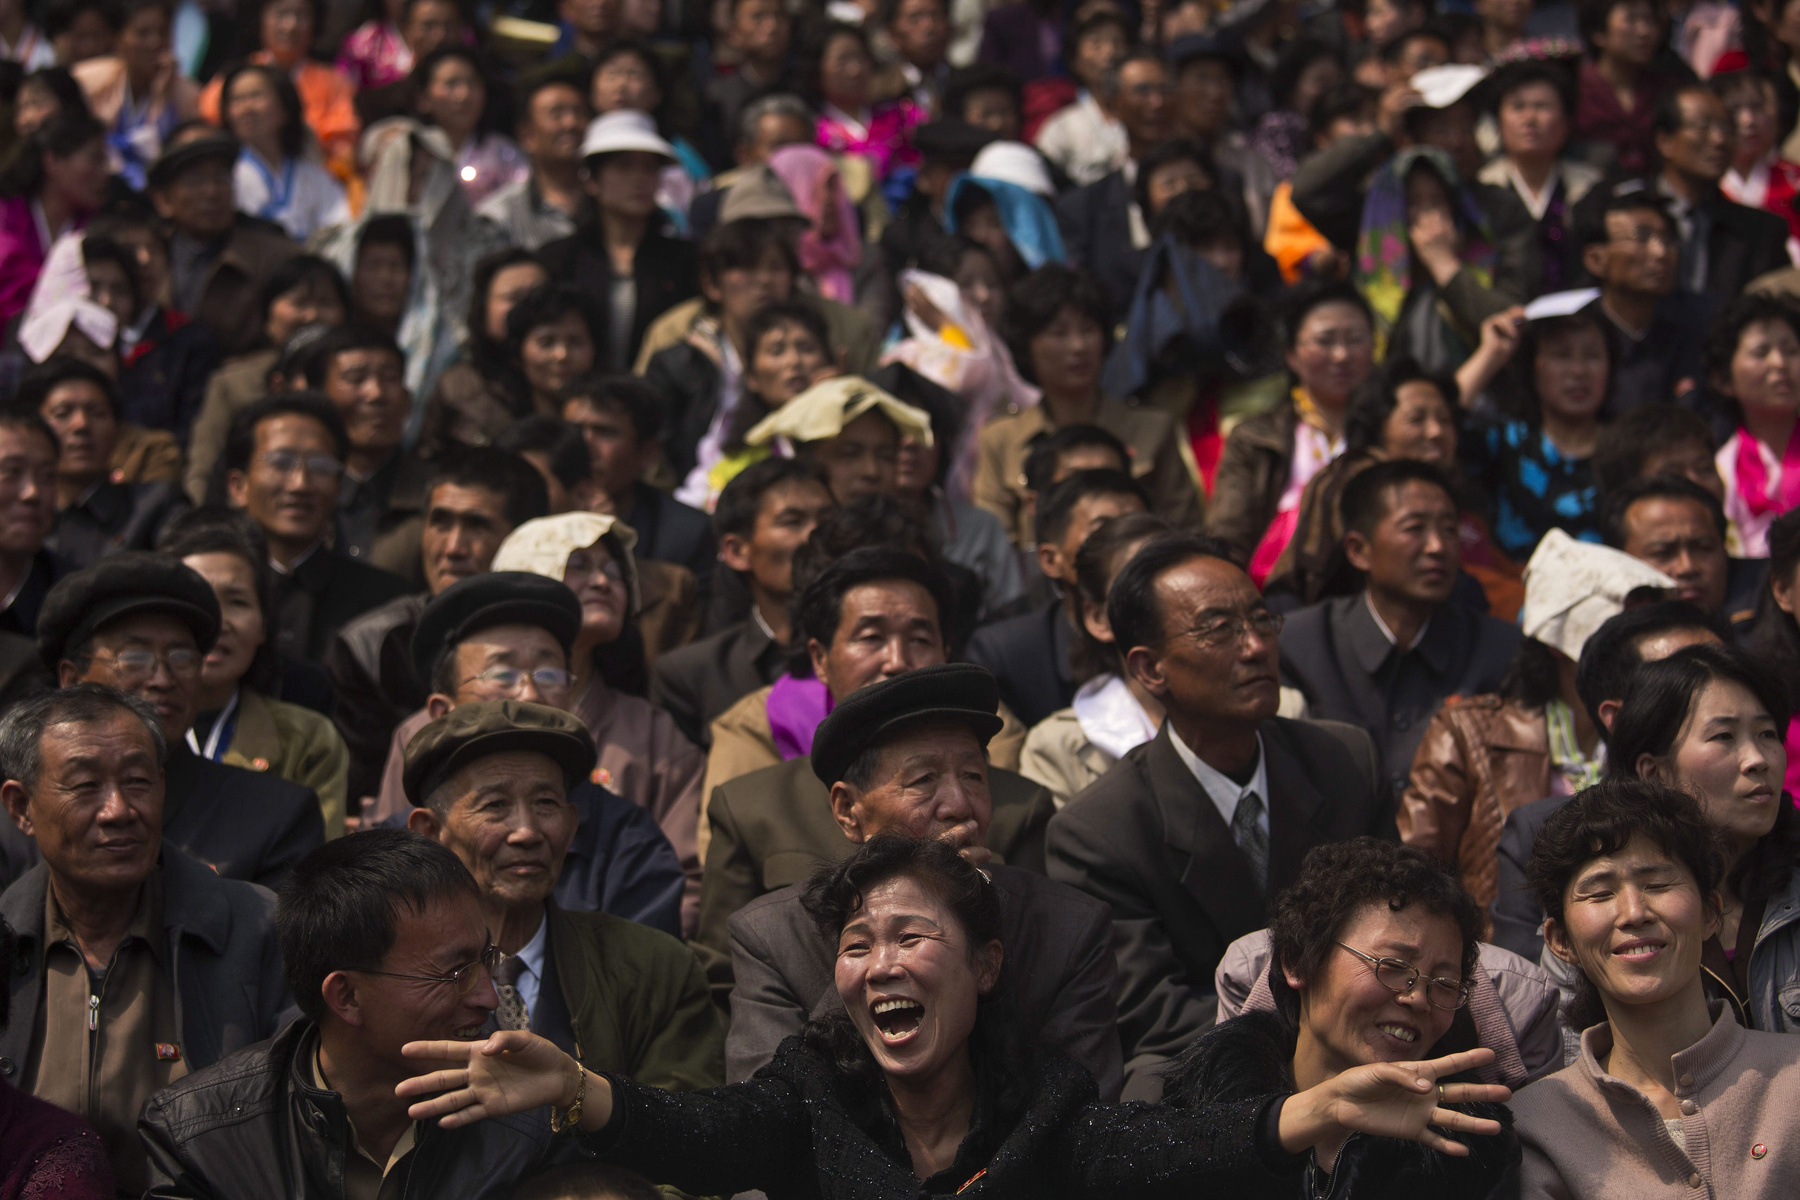 Észak-koreai népviseletbe öltözött nők a futópálya mellet.